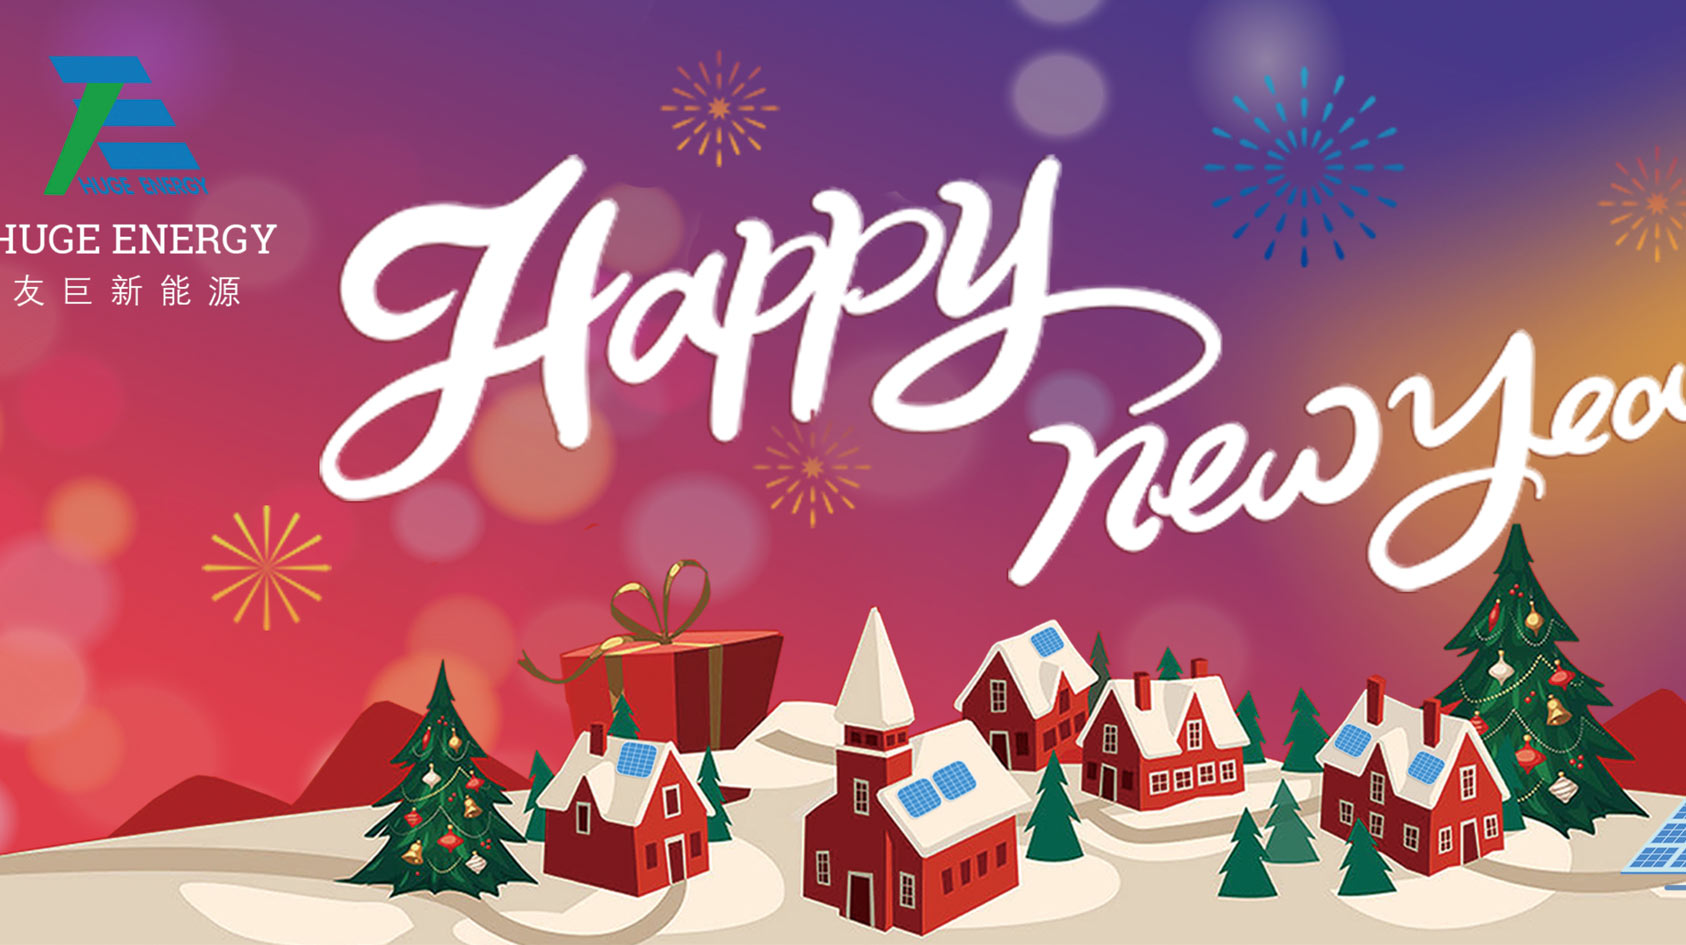 در آغاز سال جدید، Huge Energy سال خوبی را برای شما آرزو می کند!